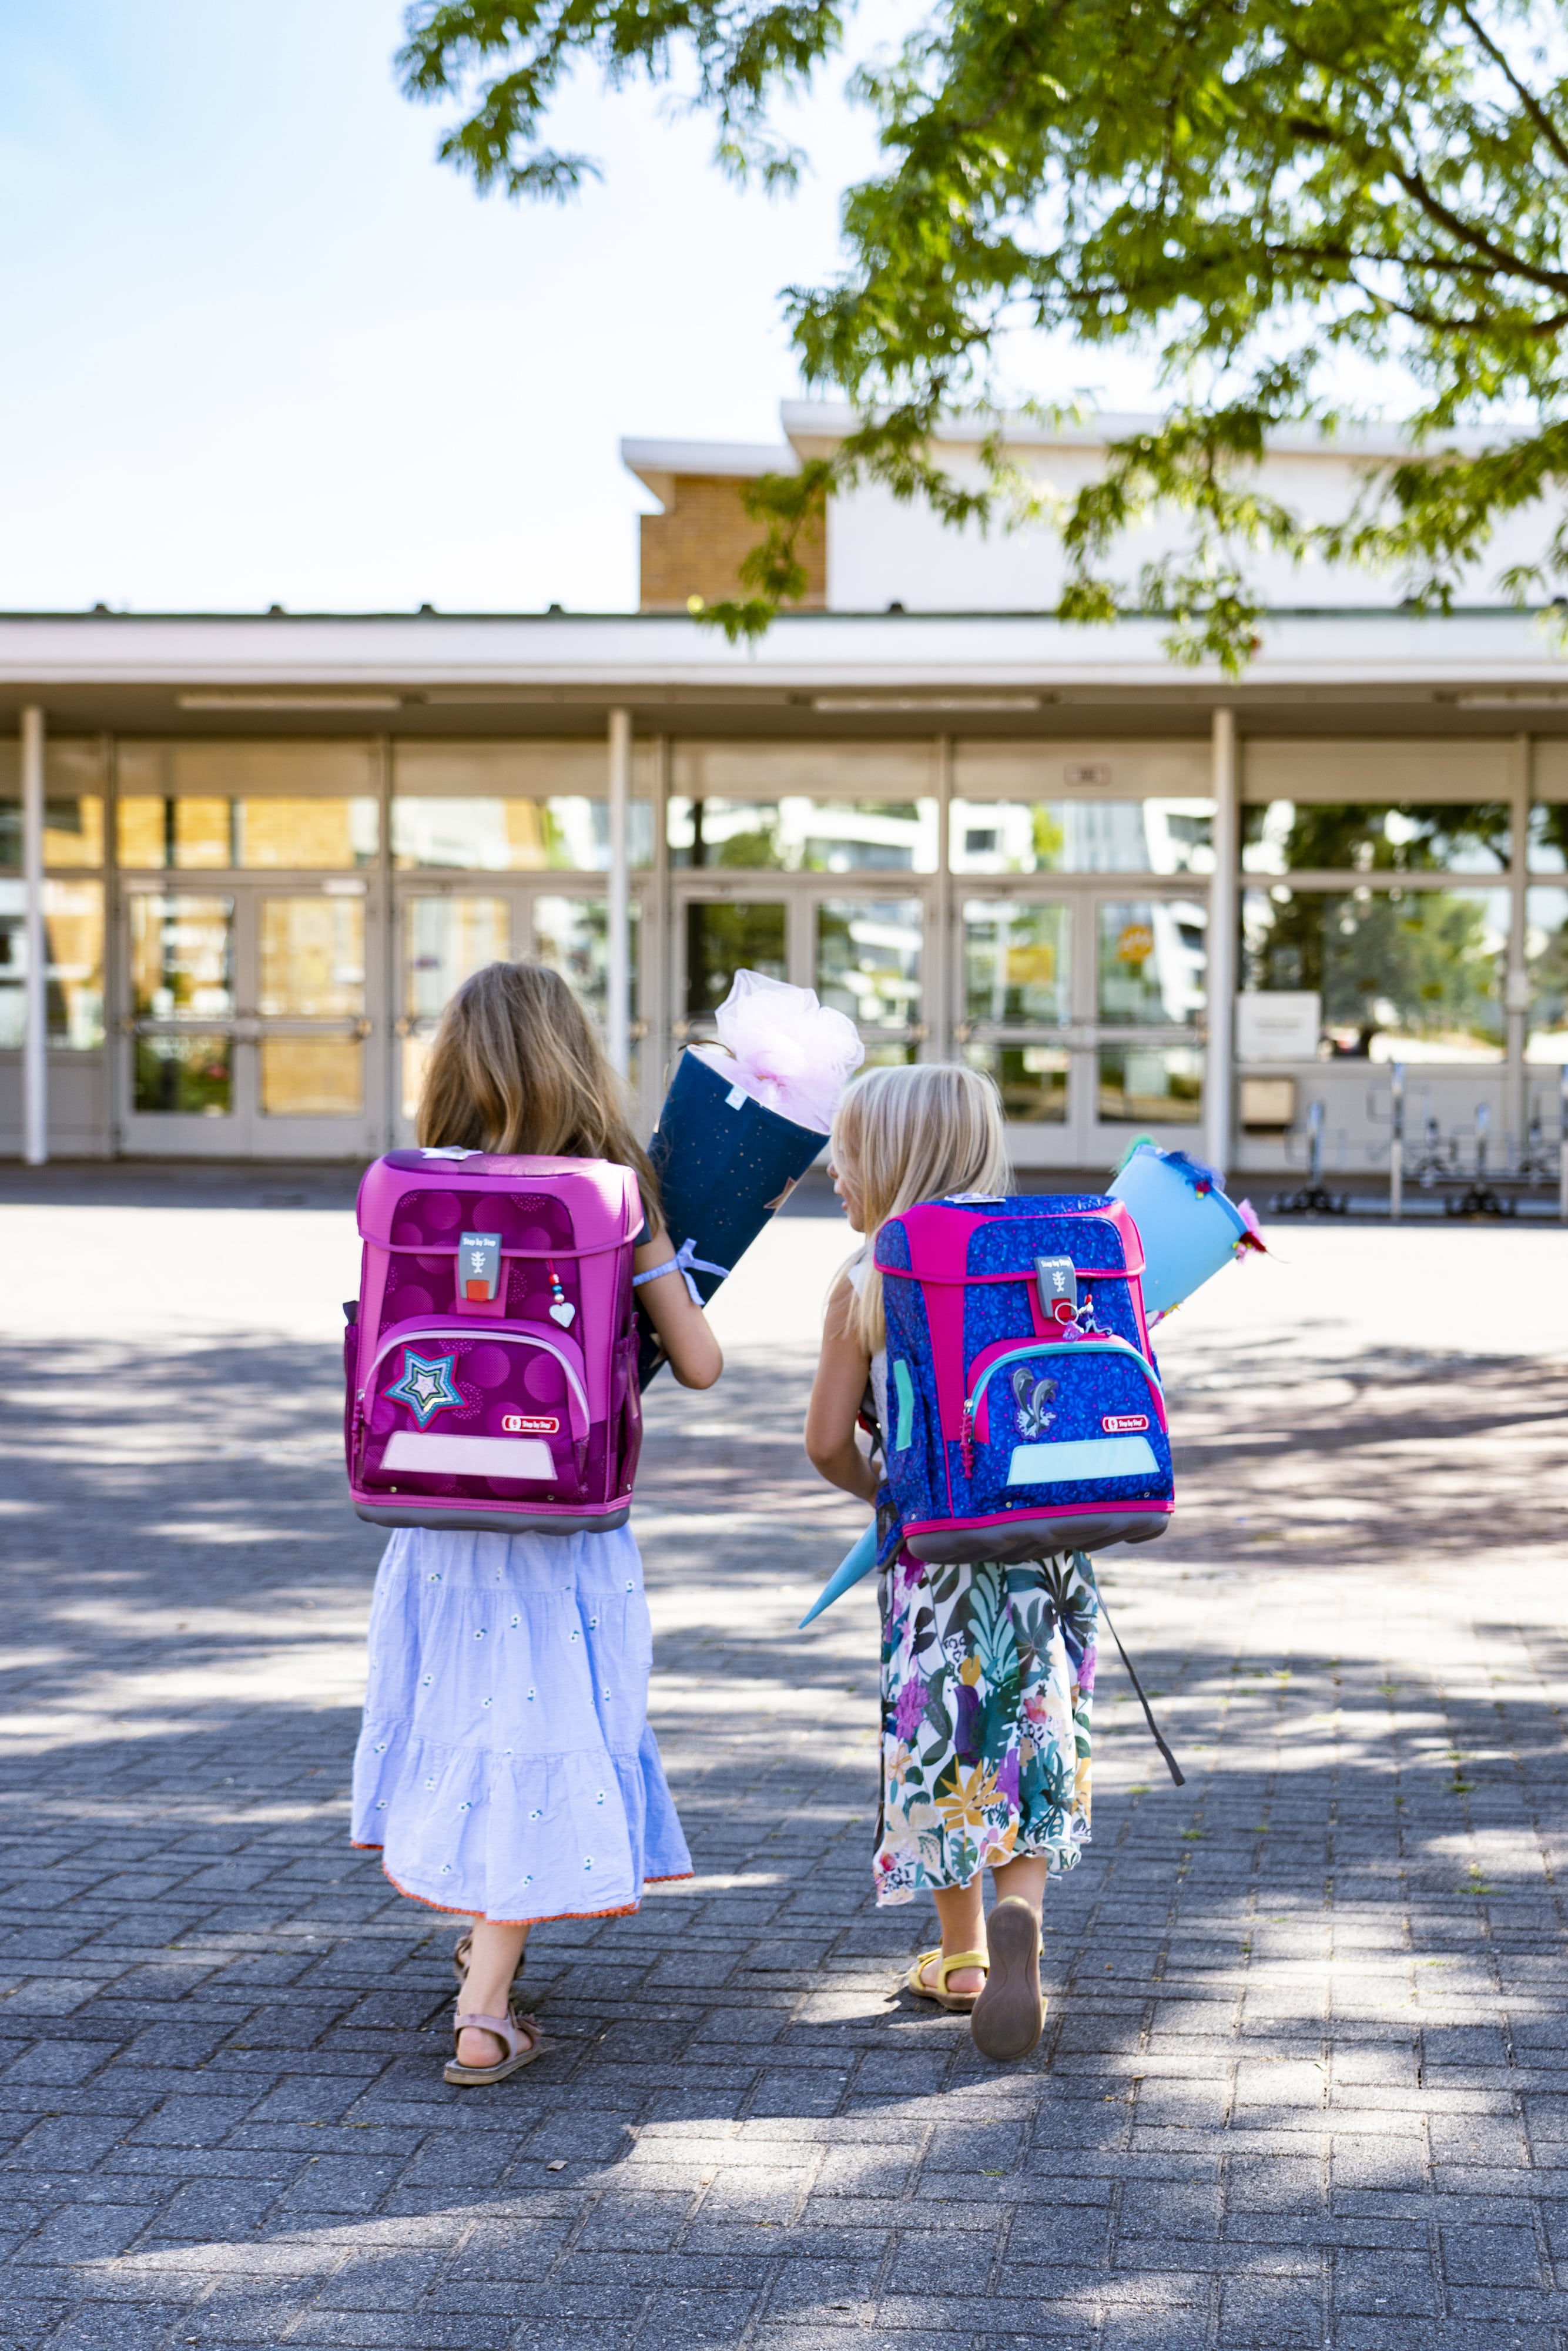 Zwei junge Mädchen laufen mit ihren Schulranzen und Schultüten auf den Eingang der Grundschule zu.